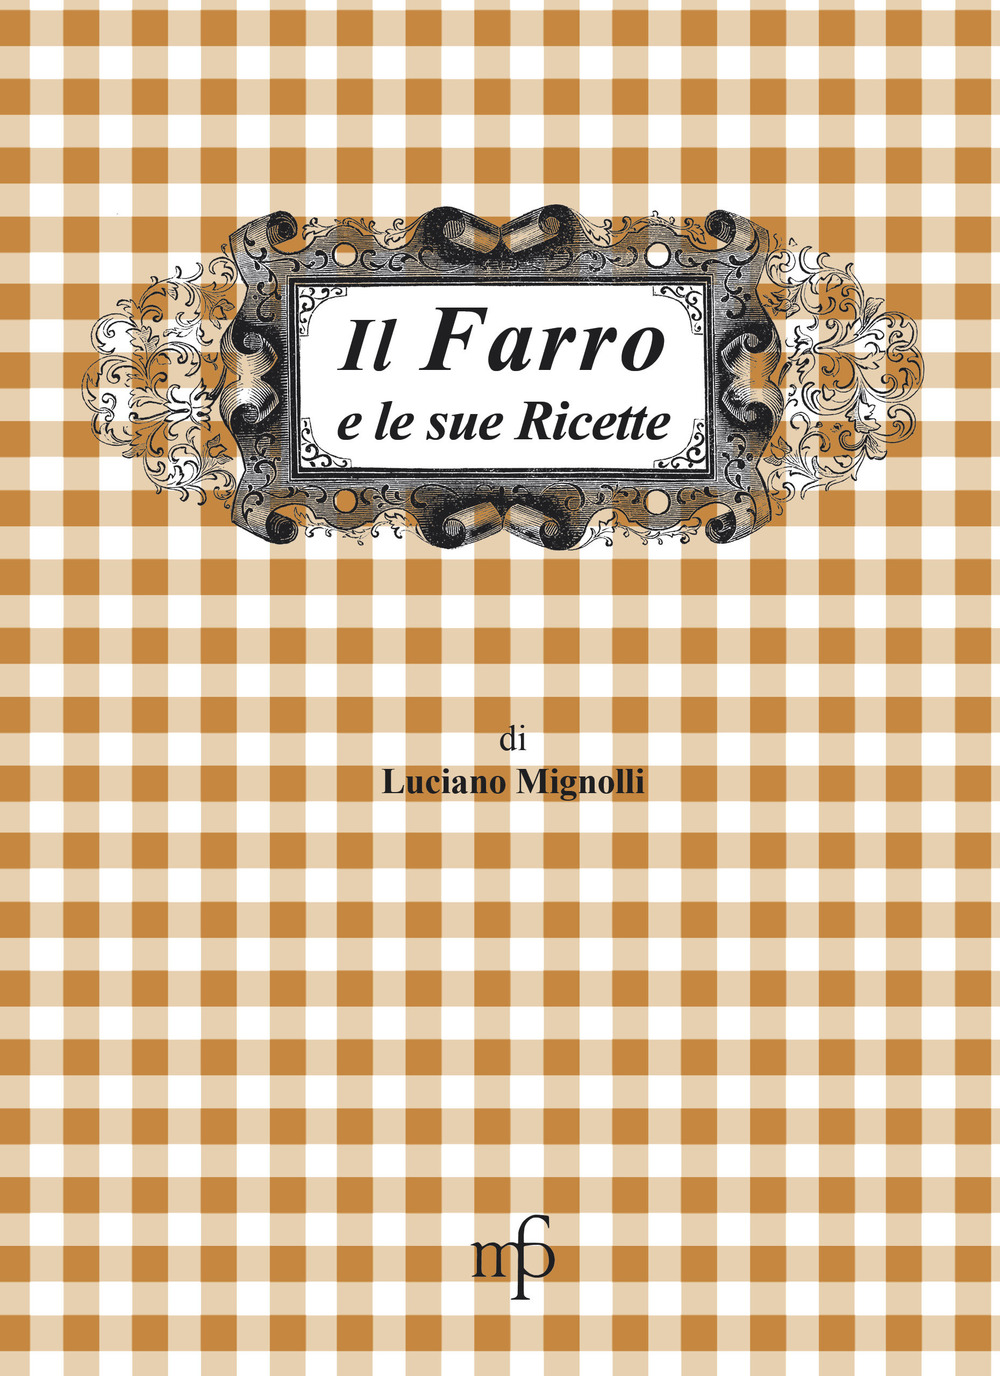 Image of Il farro e le sue ricette